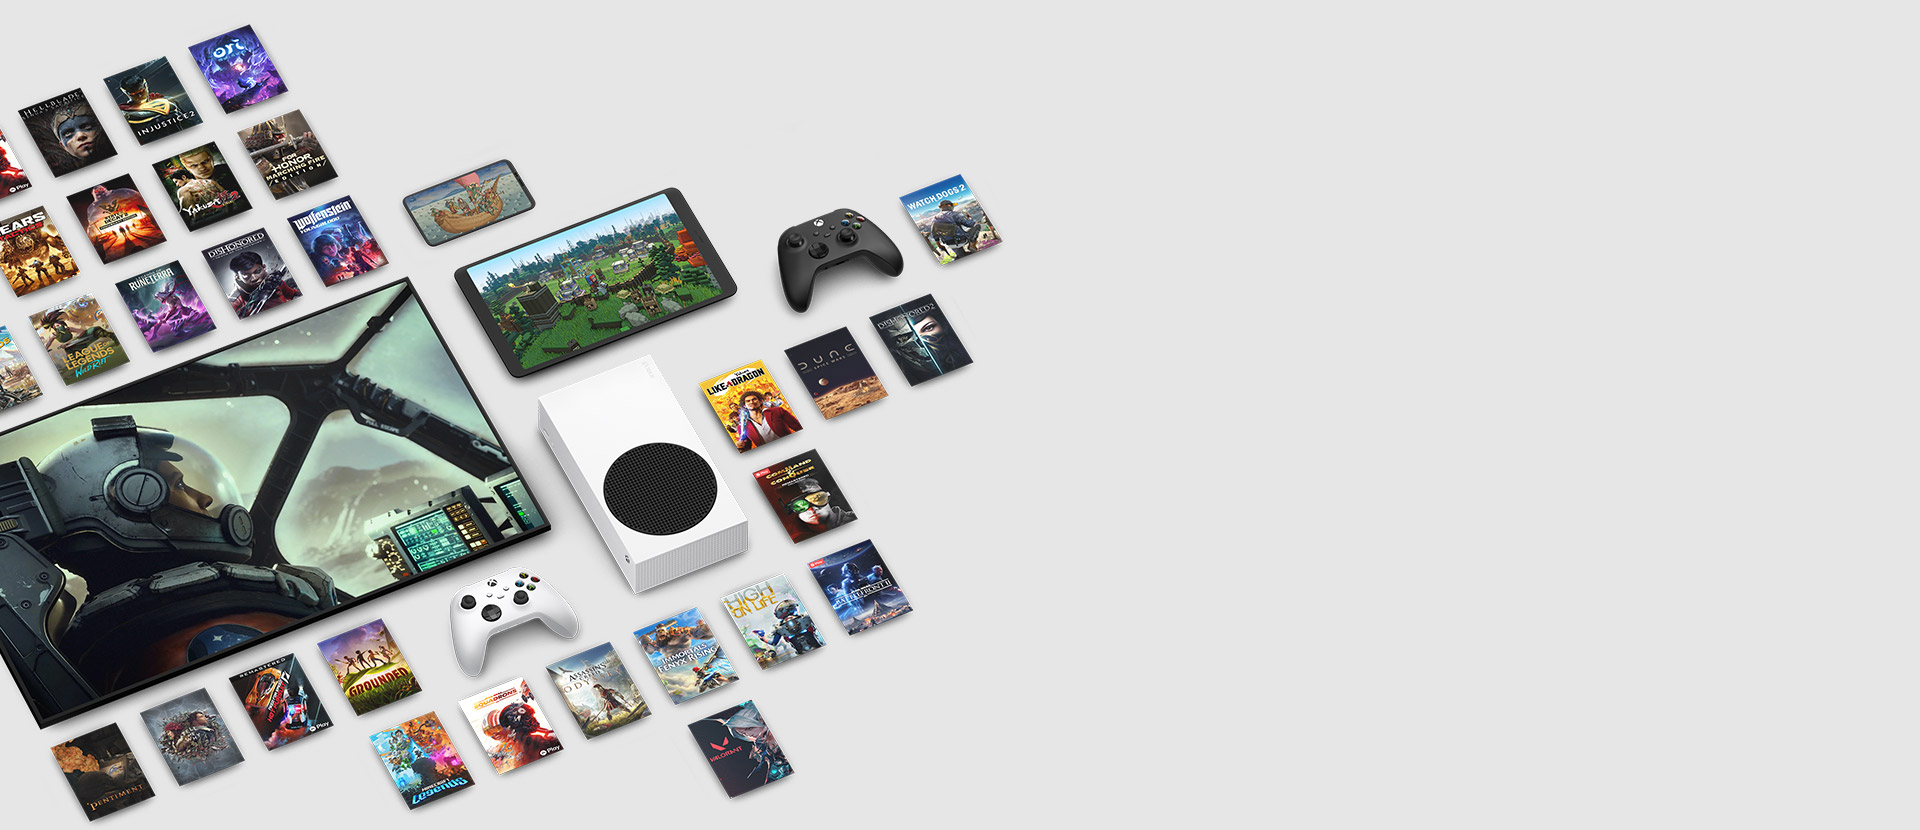 Des images de plusieurs jeux maintenant offerts avec le Xbox Game Pass Ultimate entourent plusieurs appareils, notamment une console, un téléphone cellulaire, une tablette, un téléviseur intelligent et des manettes.